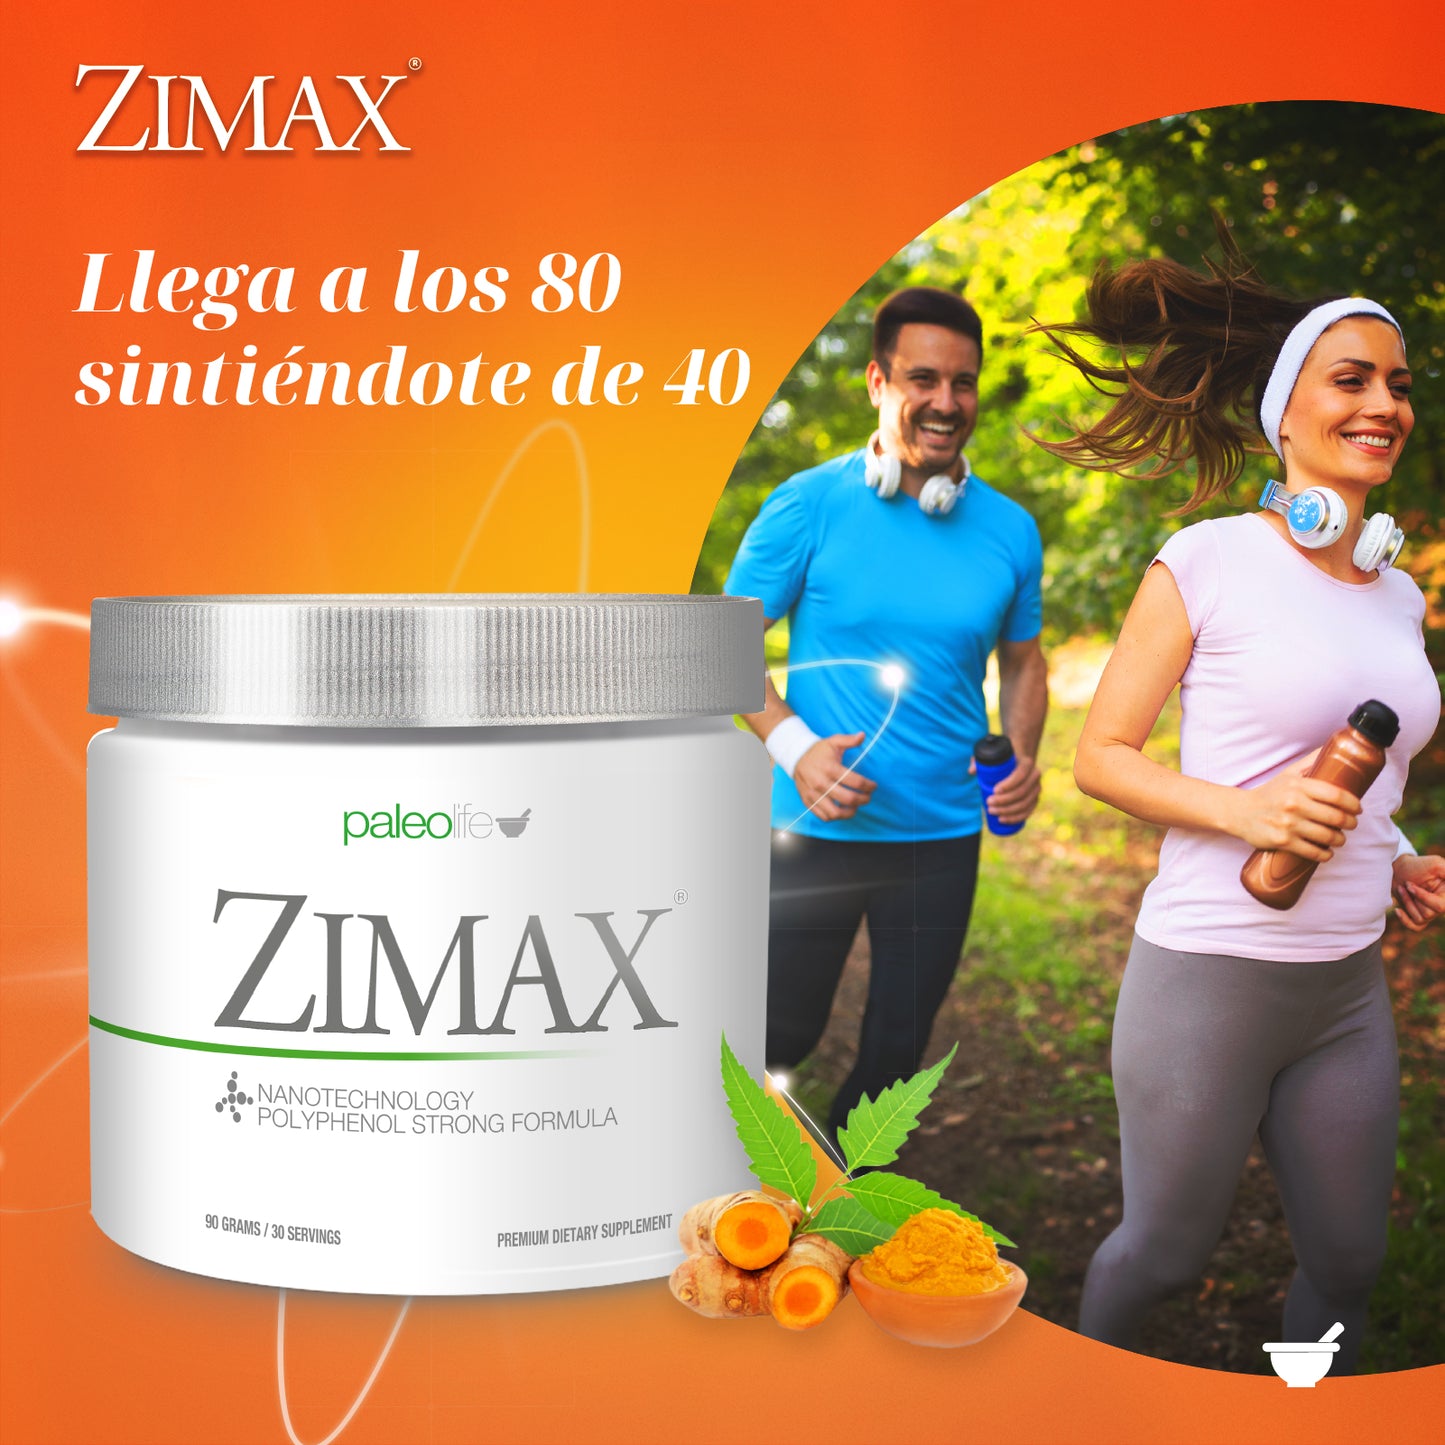 Zimax® antioxidante envase